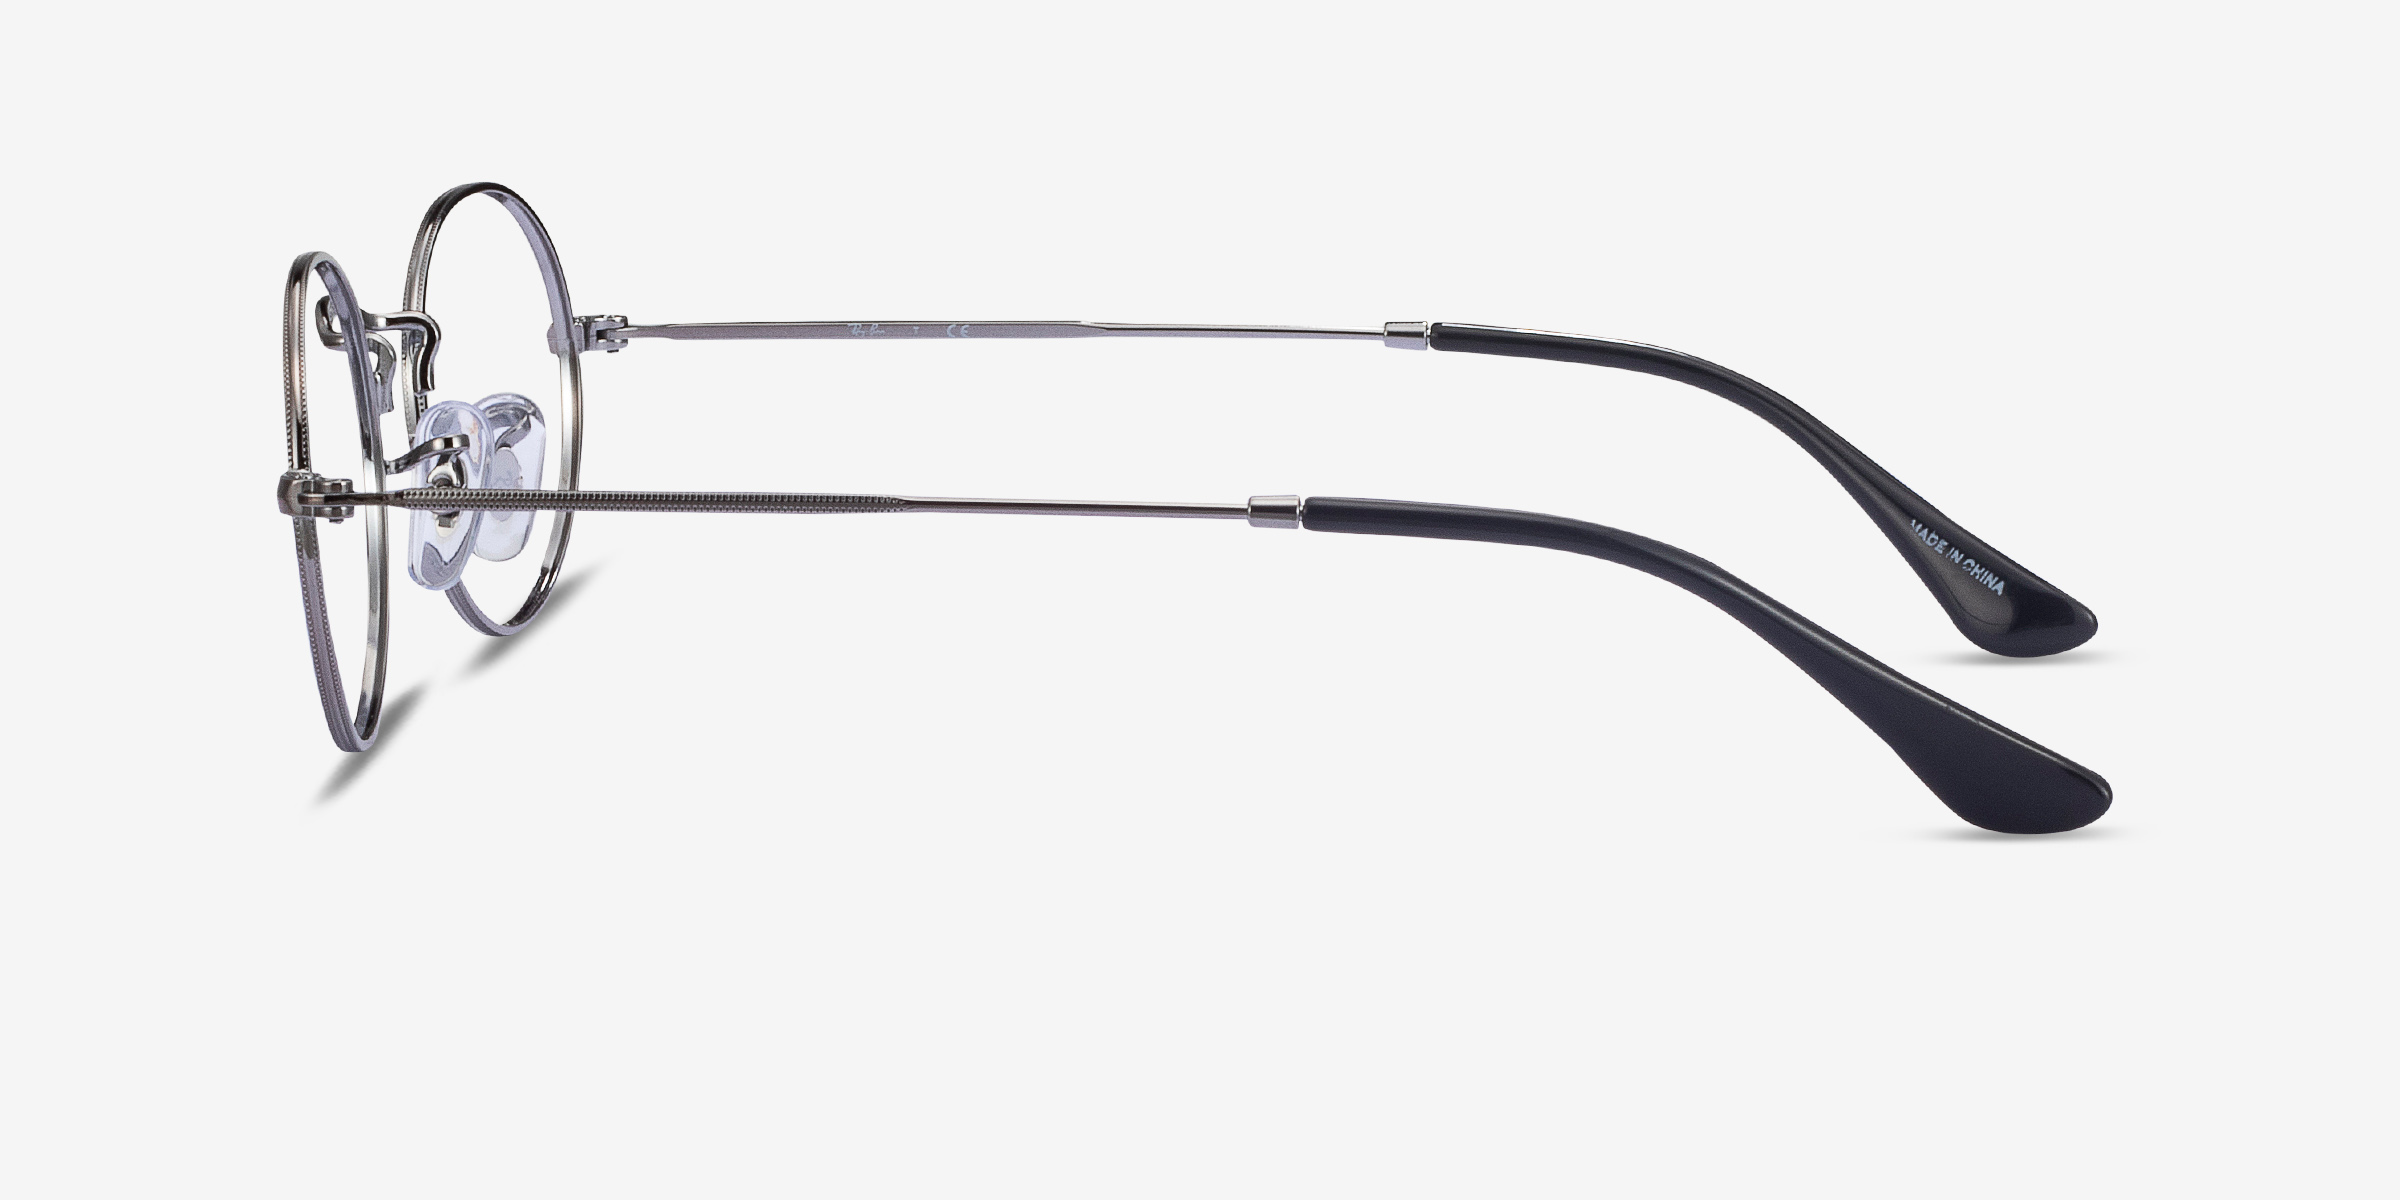 Ray Ban Rb3547v Oval Oval Gunmetal Frame Eyeglasses Eyebuydirect Canada 